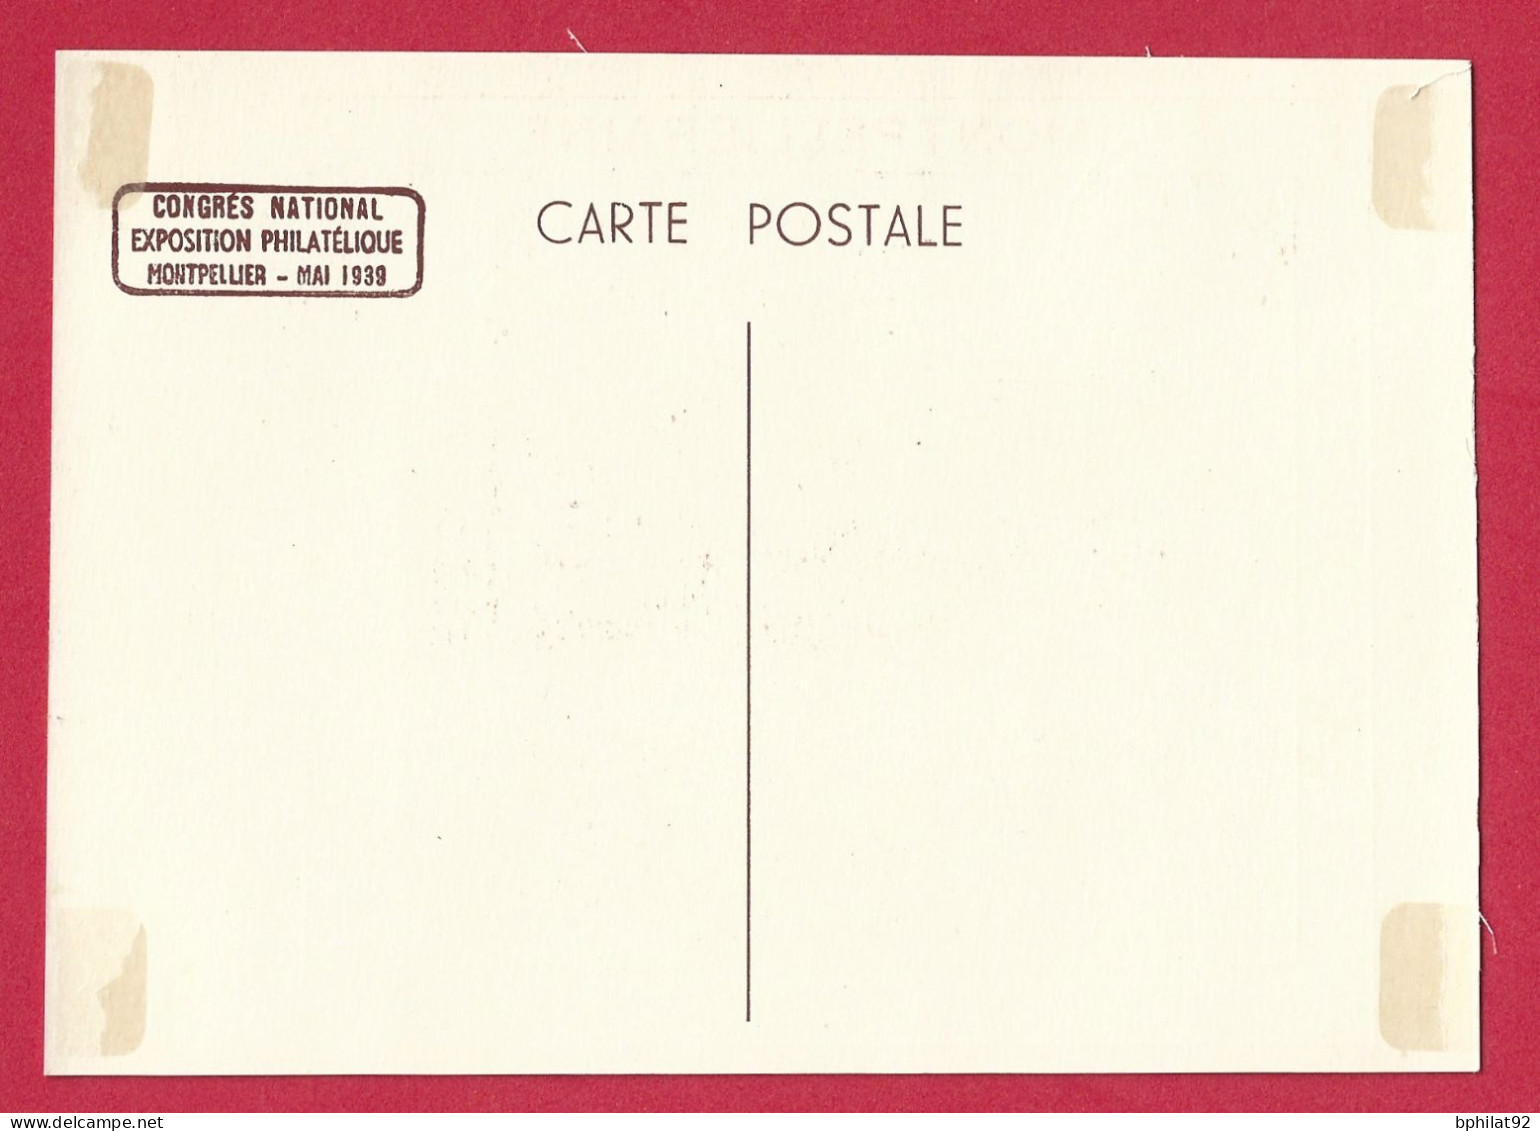 !!! CARTE POSTALE DU CONGRÈS PHILATÉLIQUE NATIONAL, EXPOSITION DE MONTPELLIER DE MAI 1939 - Expositions Philatéliques